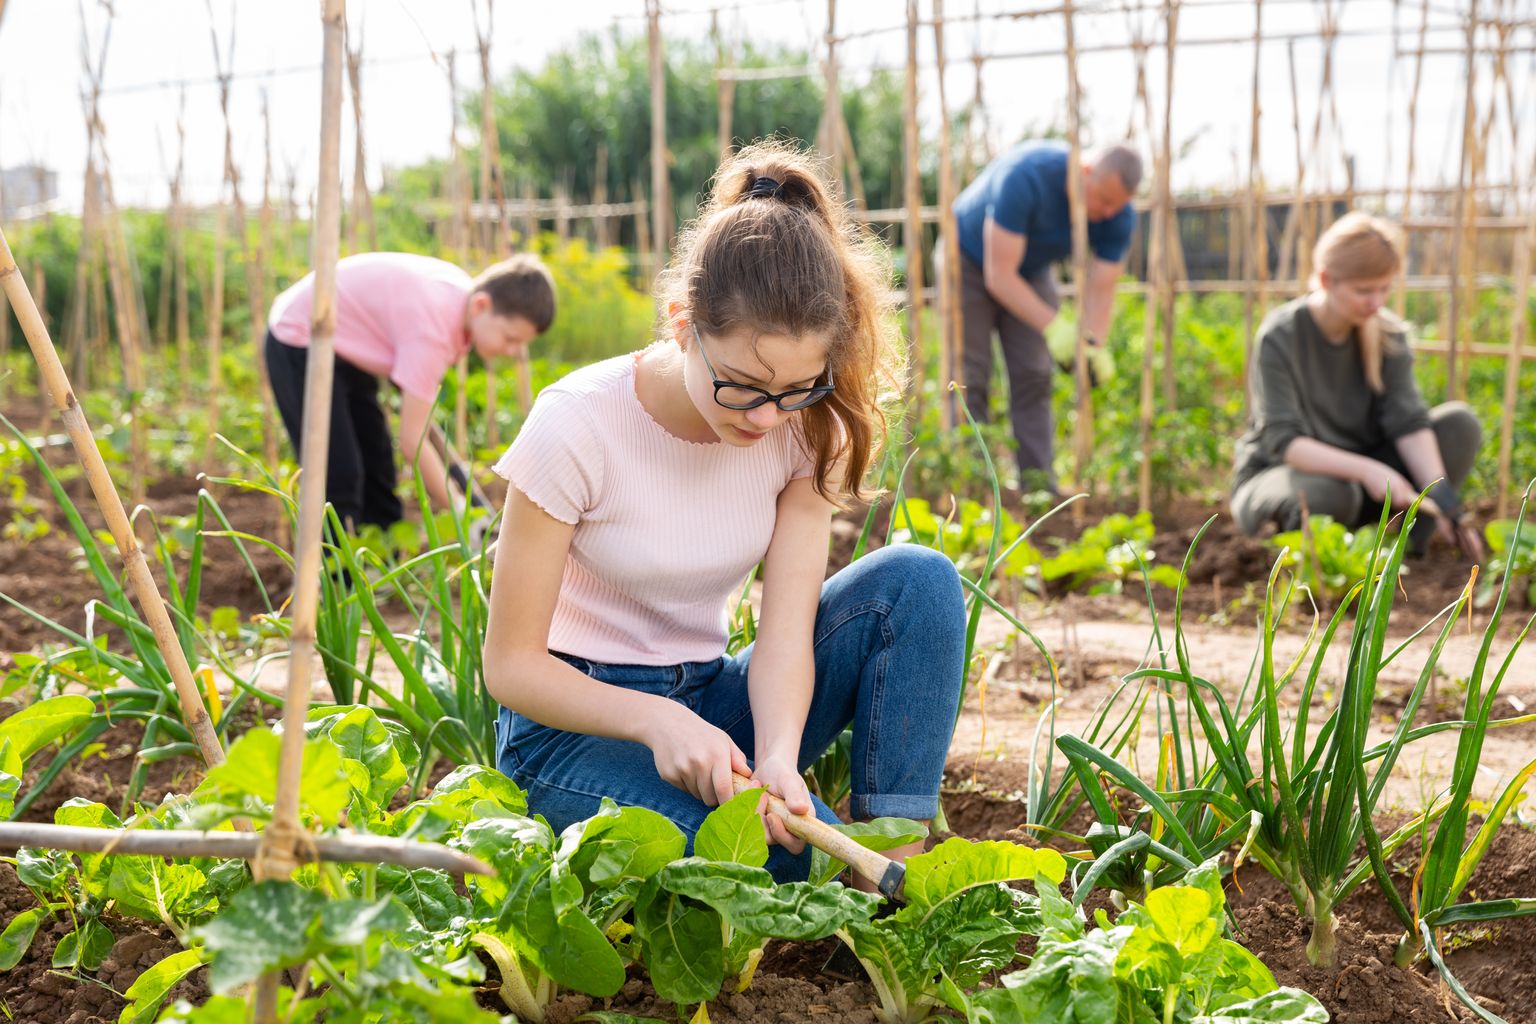 Noorte esimesed tööd on tavaliselt lihtsad, näiteks teenindus- või aiatööd. Mõlemaid saab teha ka malevas.